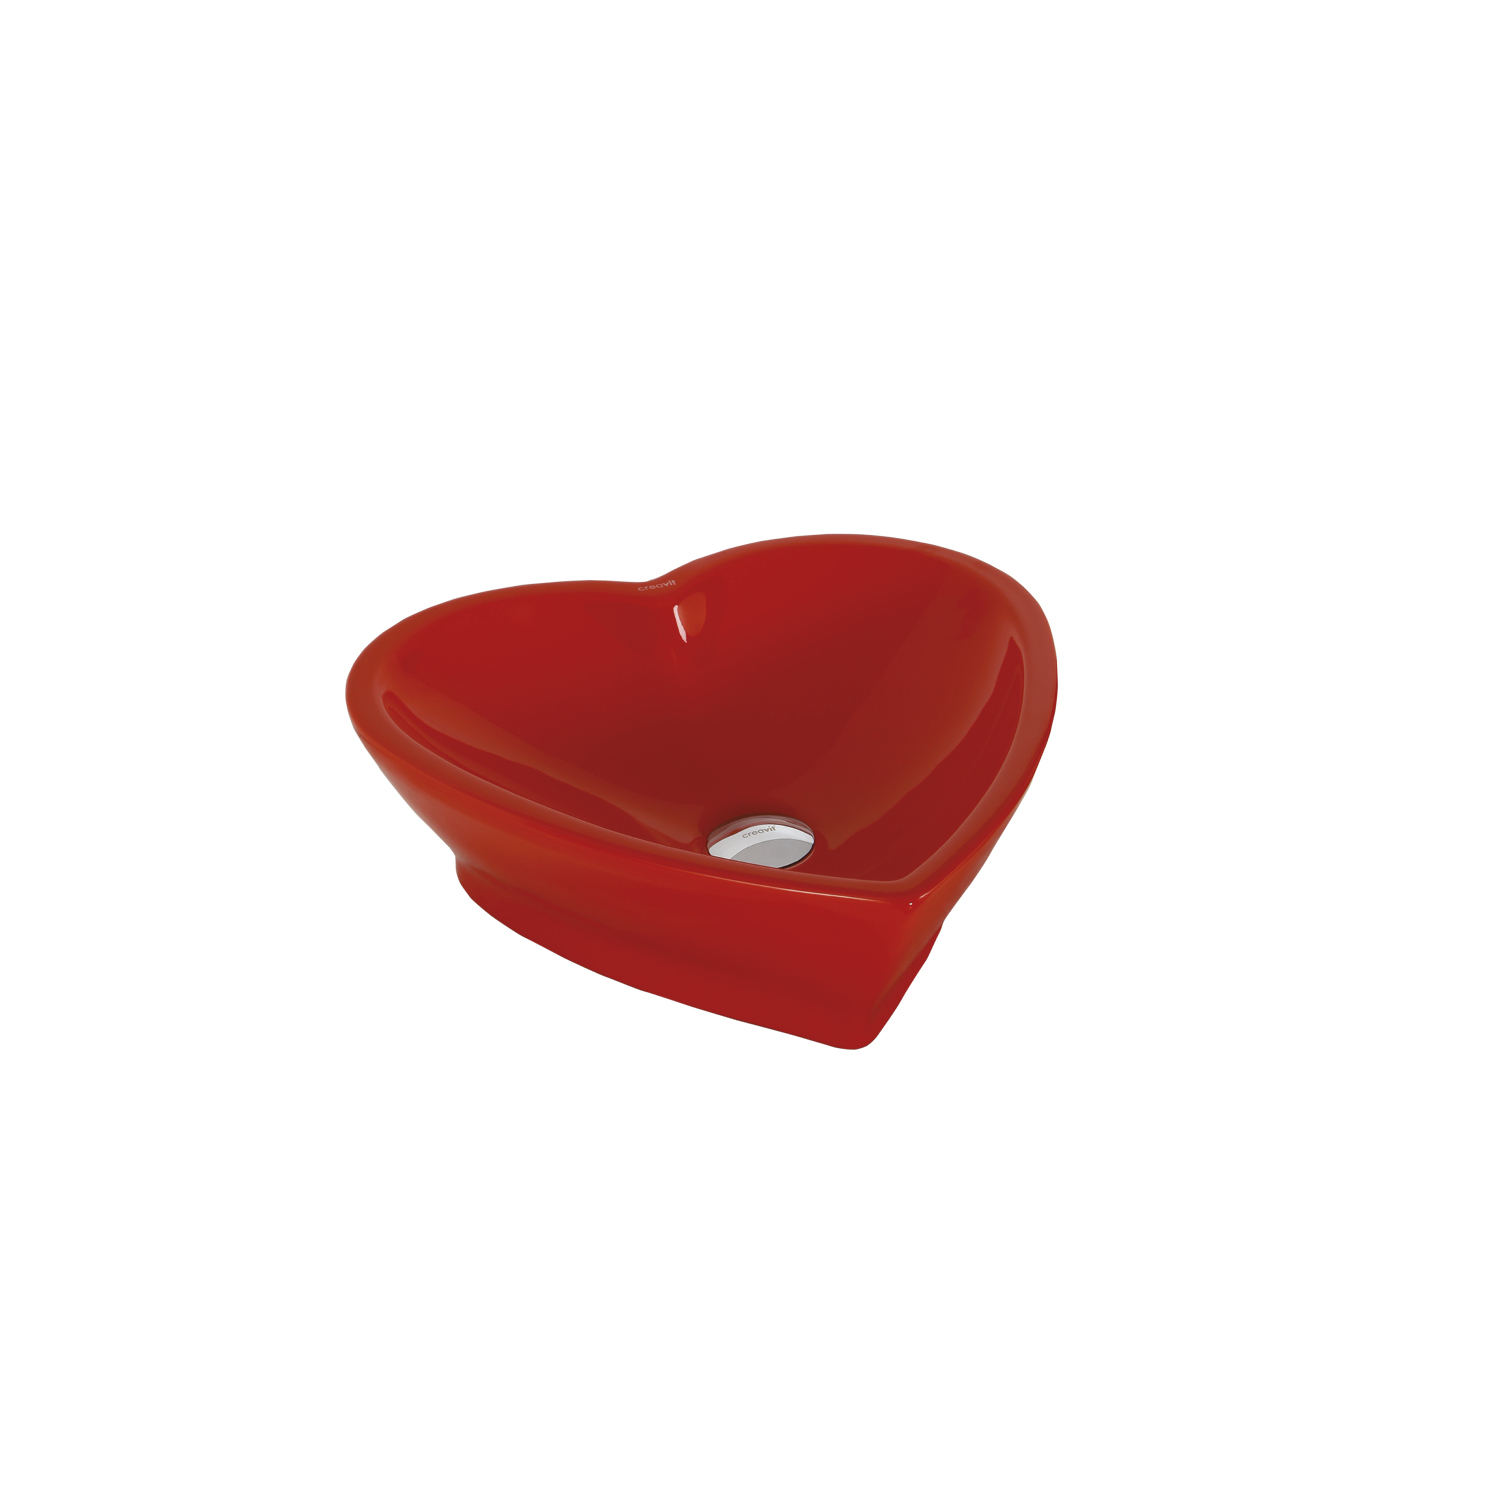 TP149.70000 Love 45 cm Setüstü Kalp Lavabo - Kırmızı